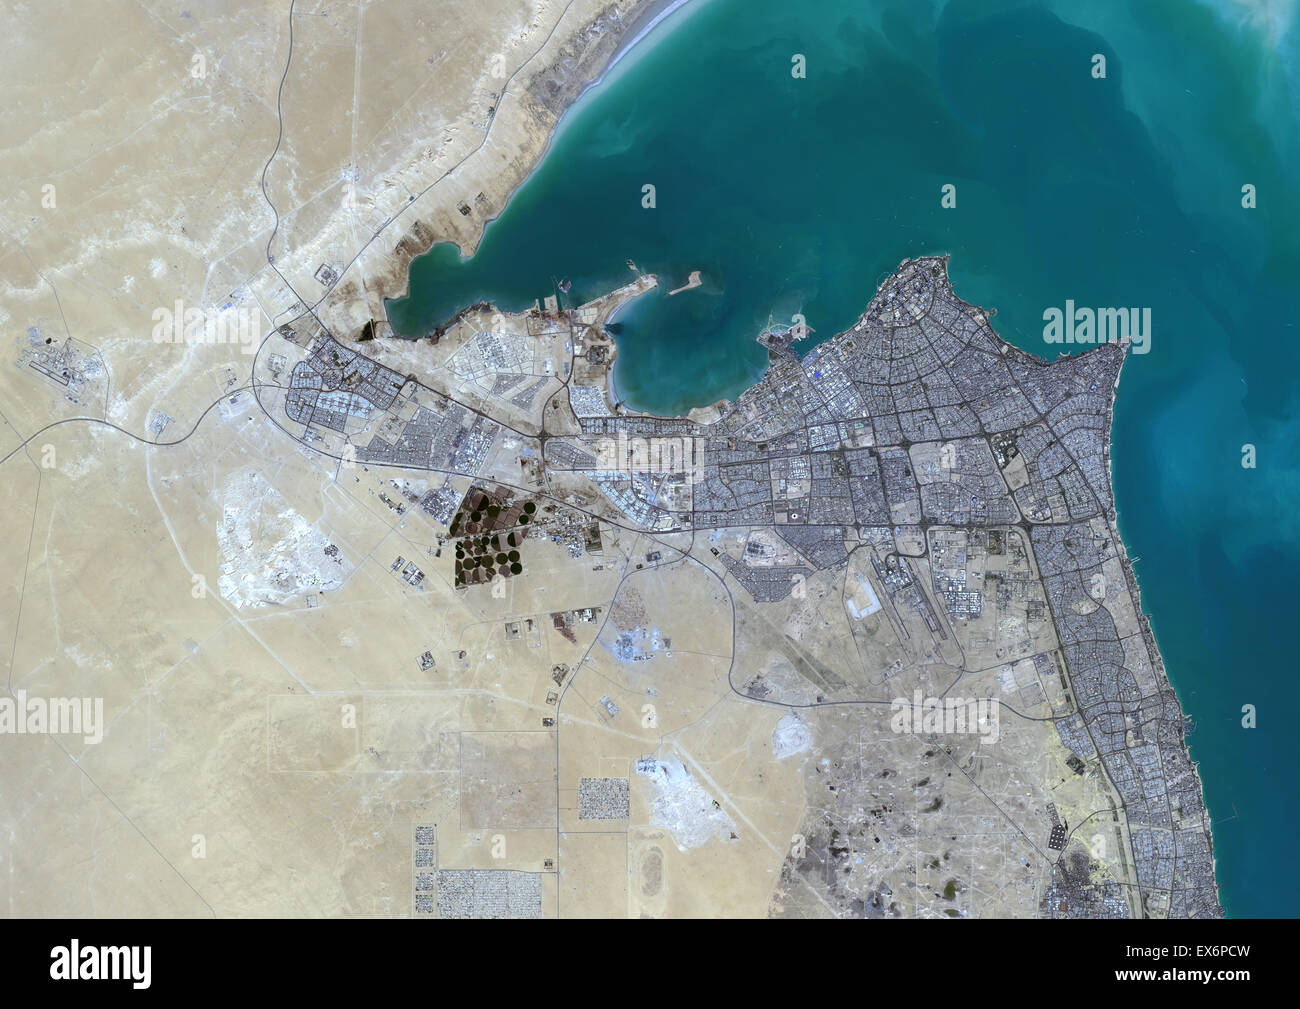 Colore immagine satellitare di Kuwait City in Kuwait. Immagine presa il 16 ottobre 2013 con il satellite Landsat 8 dati. Foto Stock